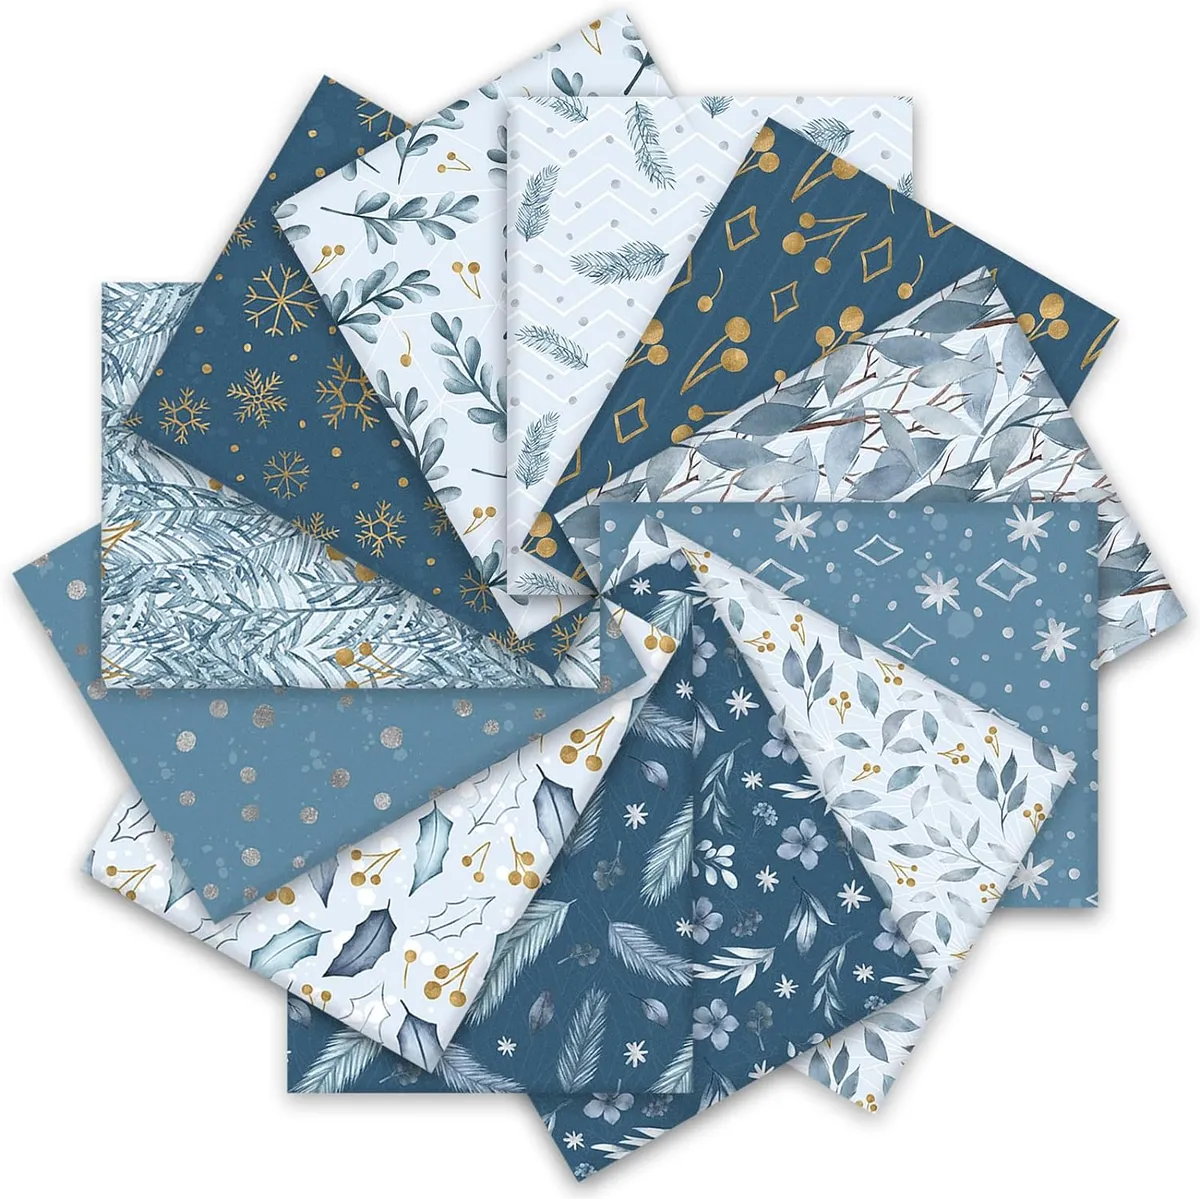 Whaline 12Pcs Blue Christmas Cotton Fabric Bundles